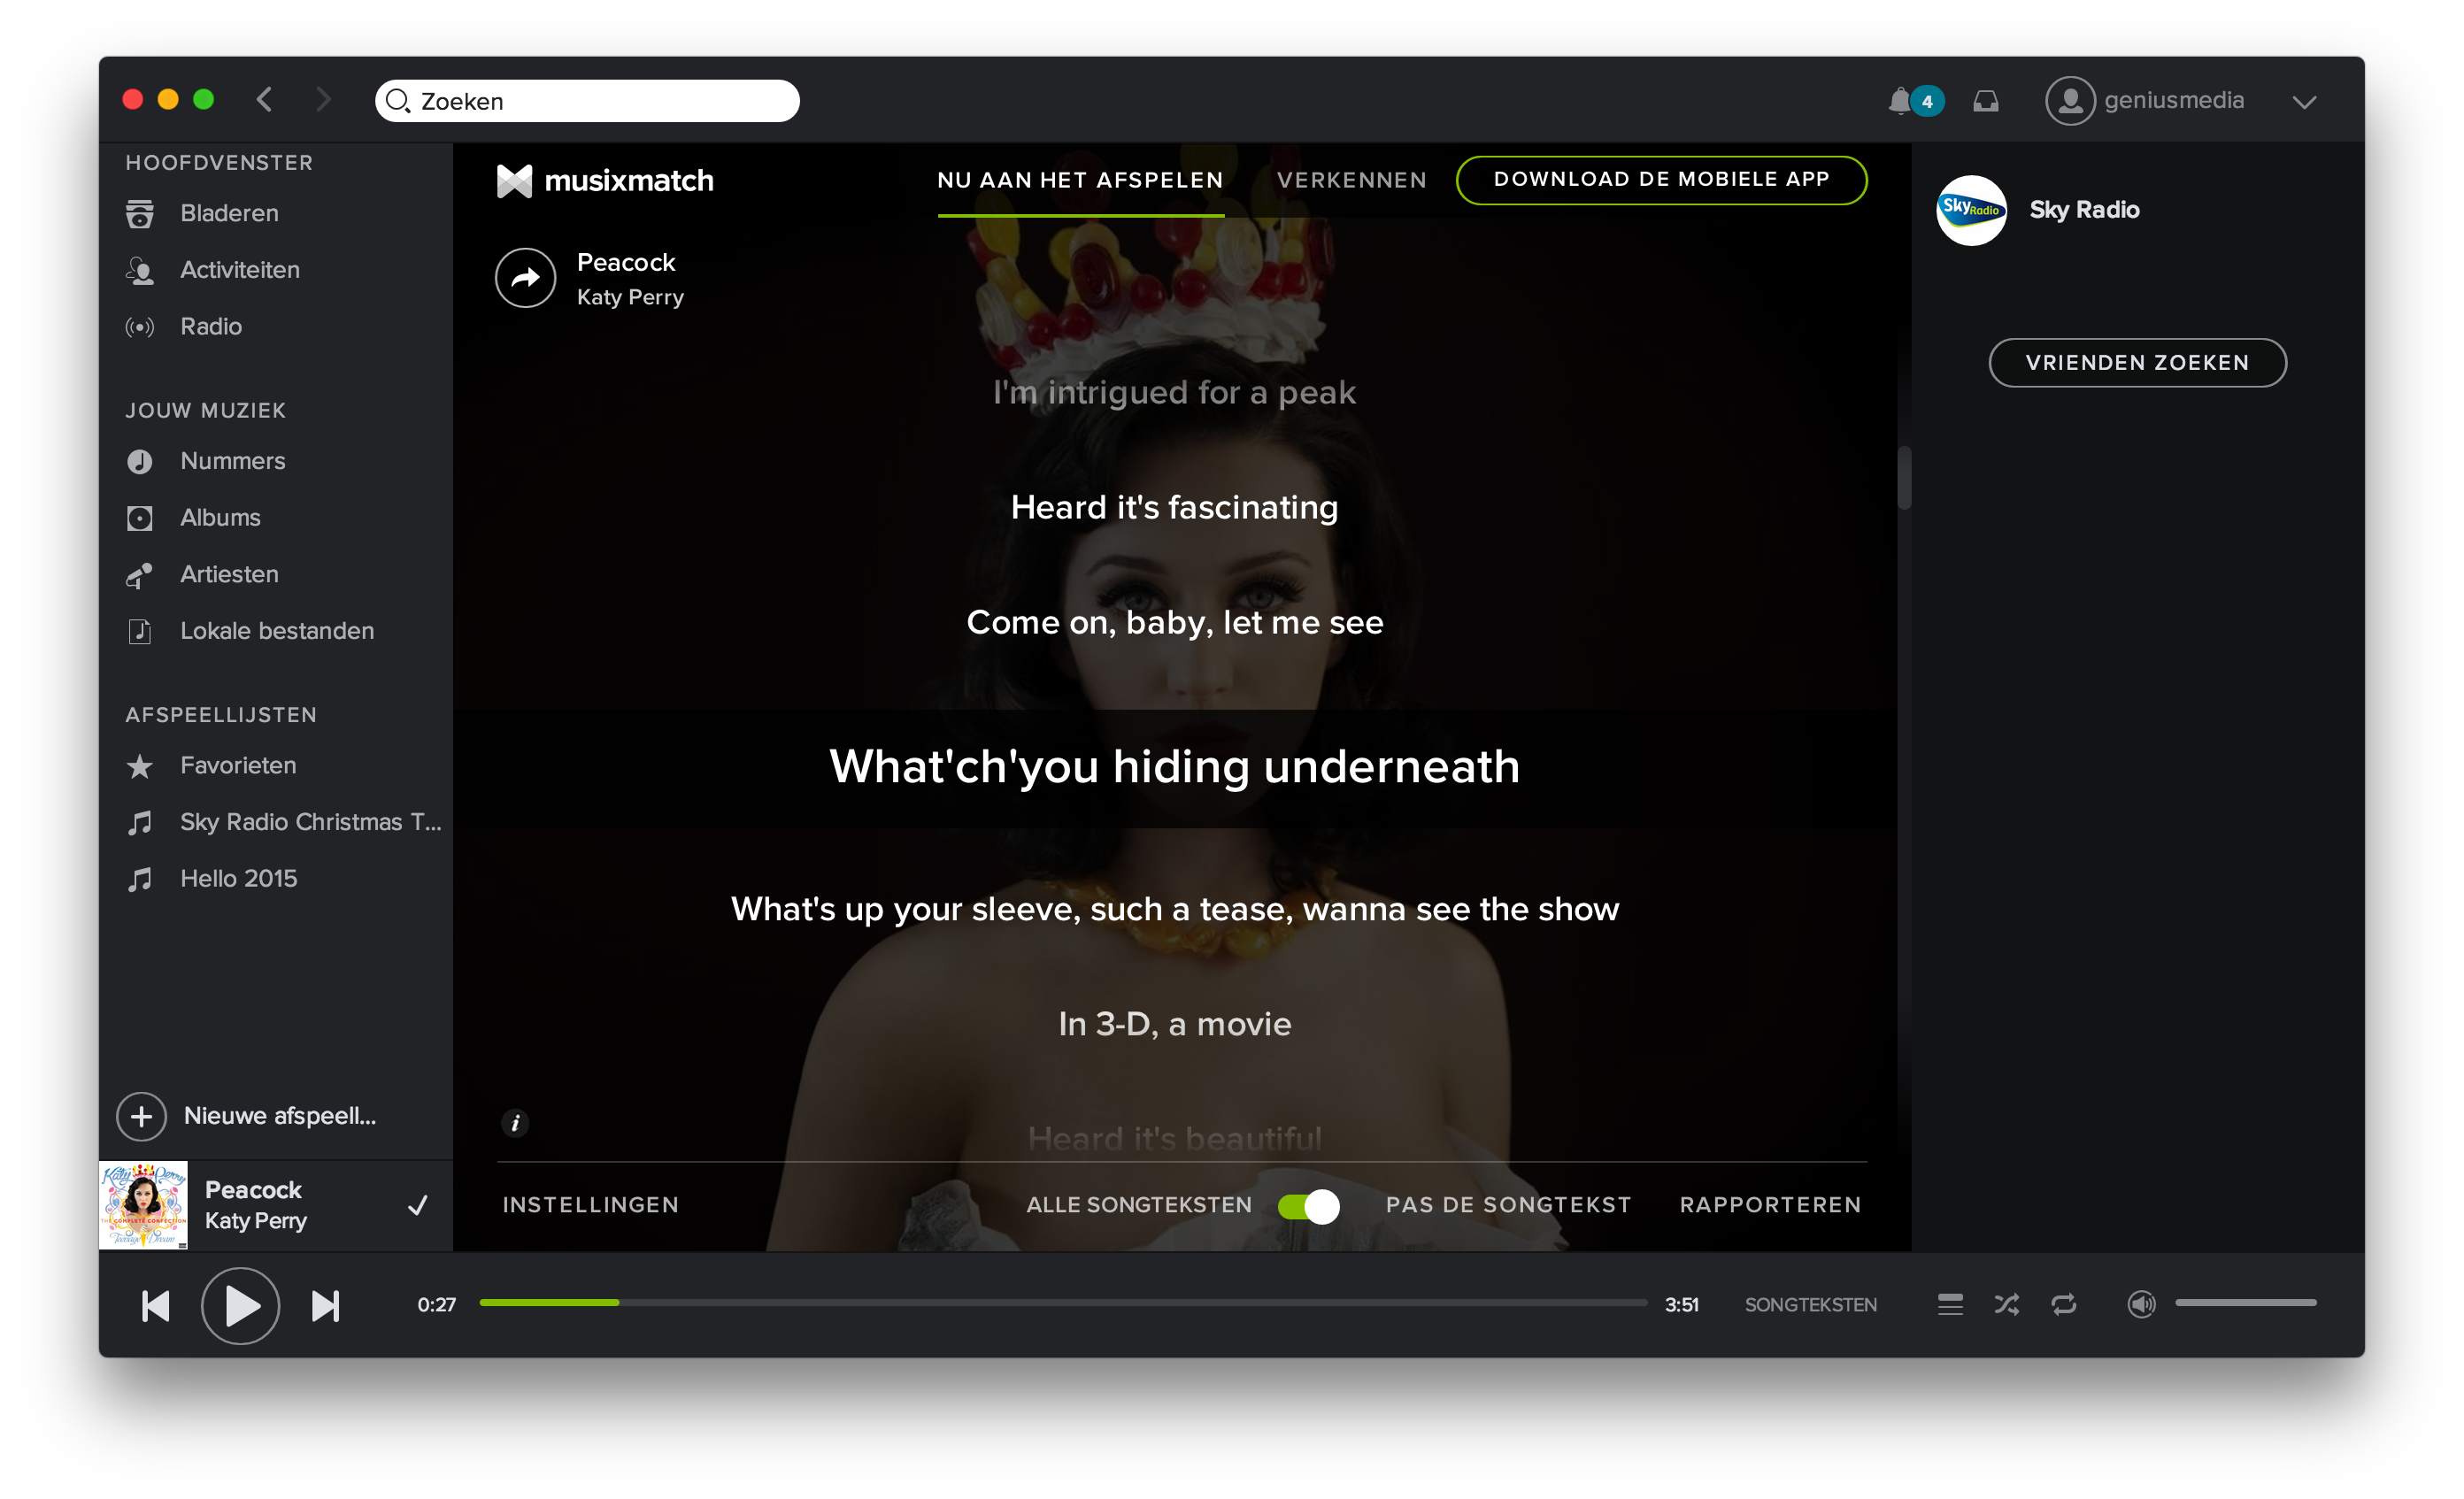 Songtekst Spotify App